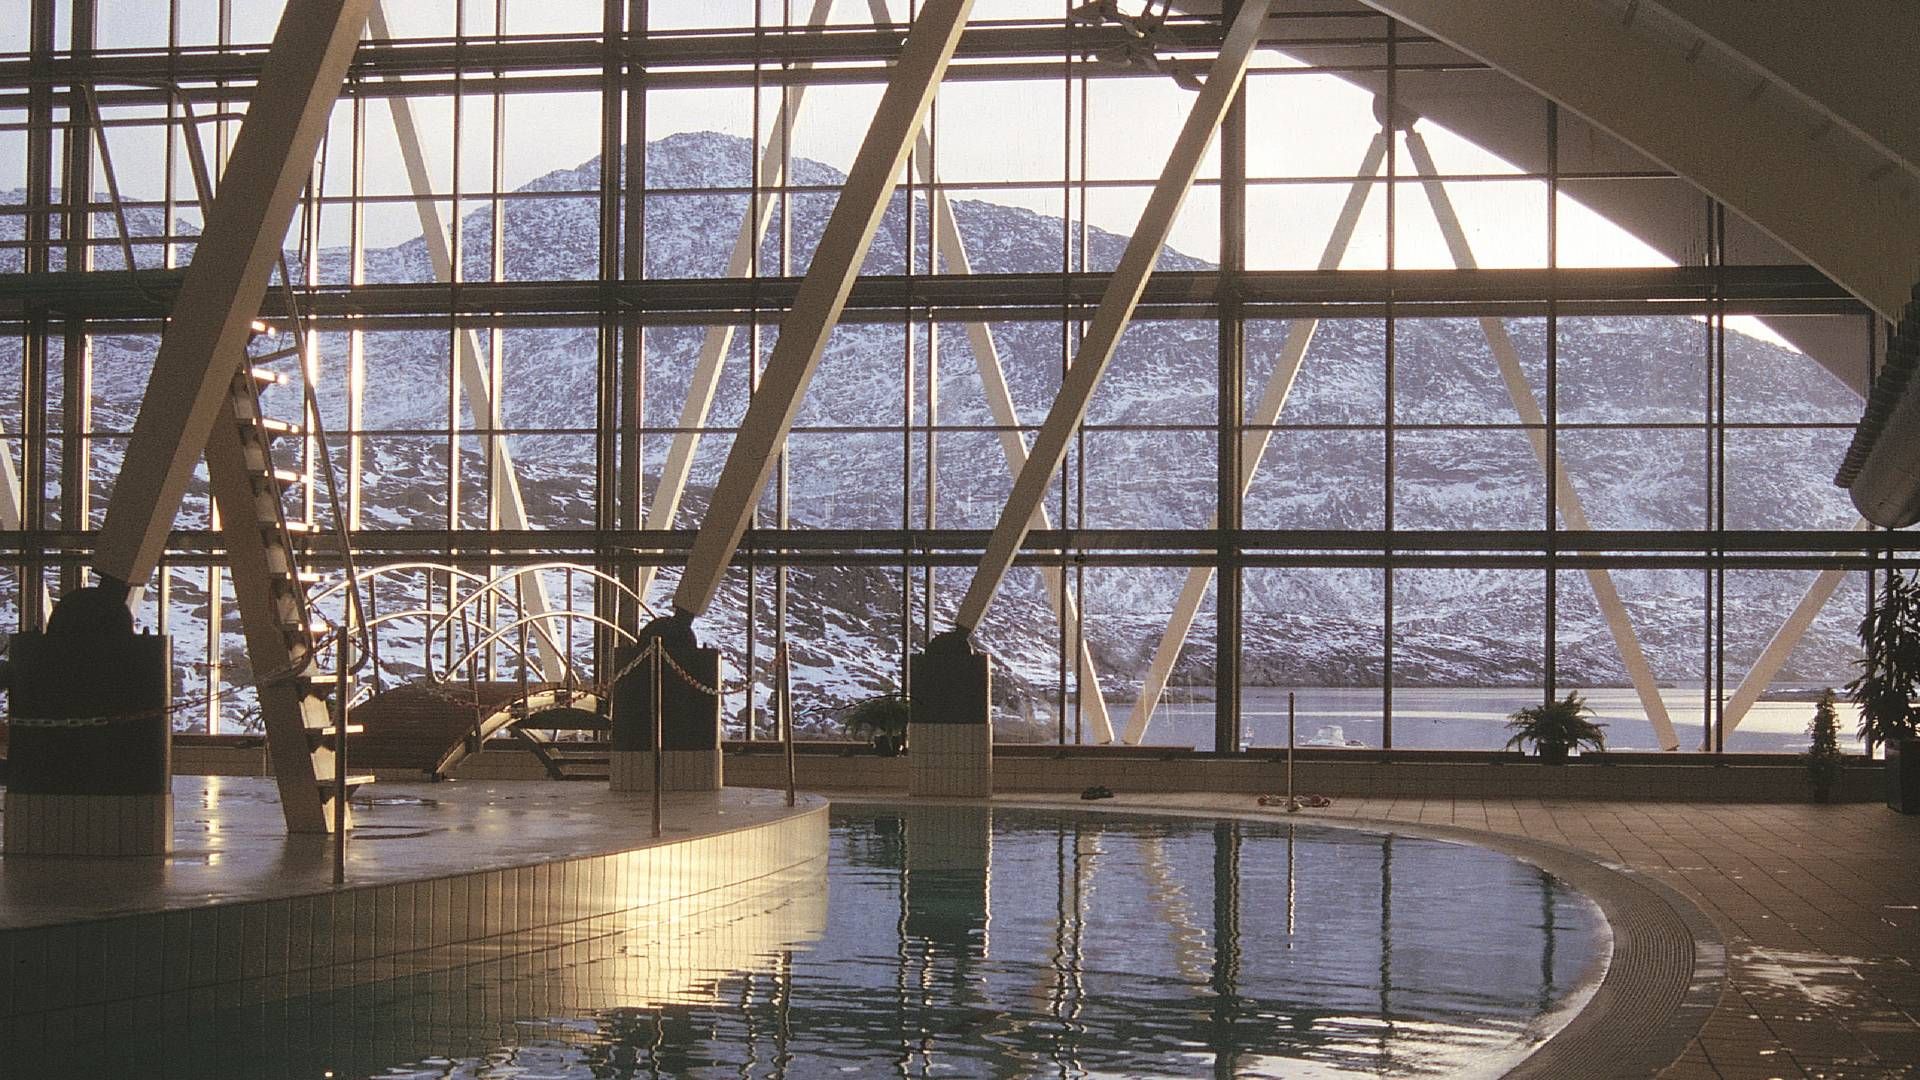 Malik svømmehal i Nuuk, Grønland, er blandt de mange projekter, som KHR Architecture står bag. | Foto: KHR Architecture